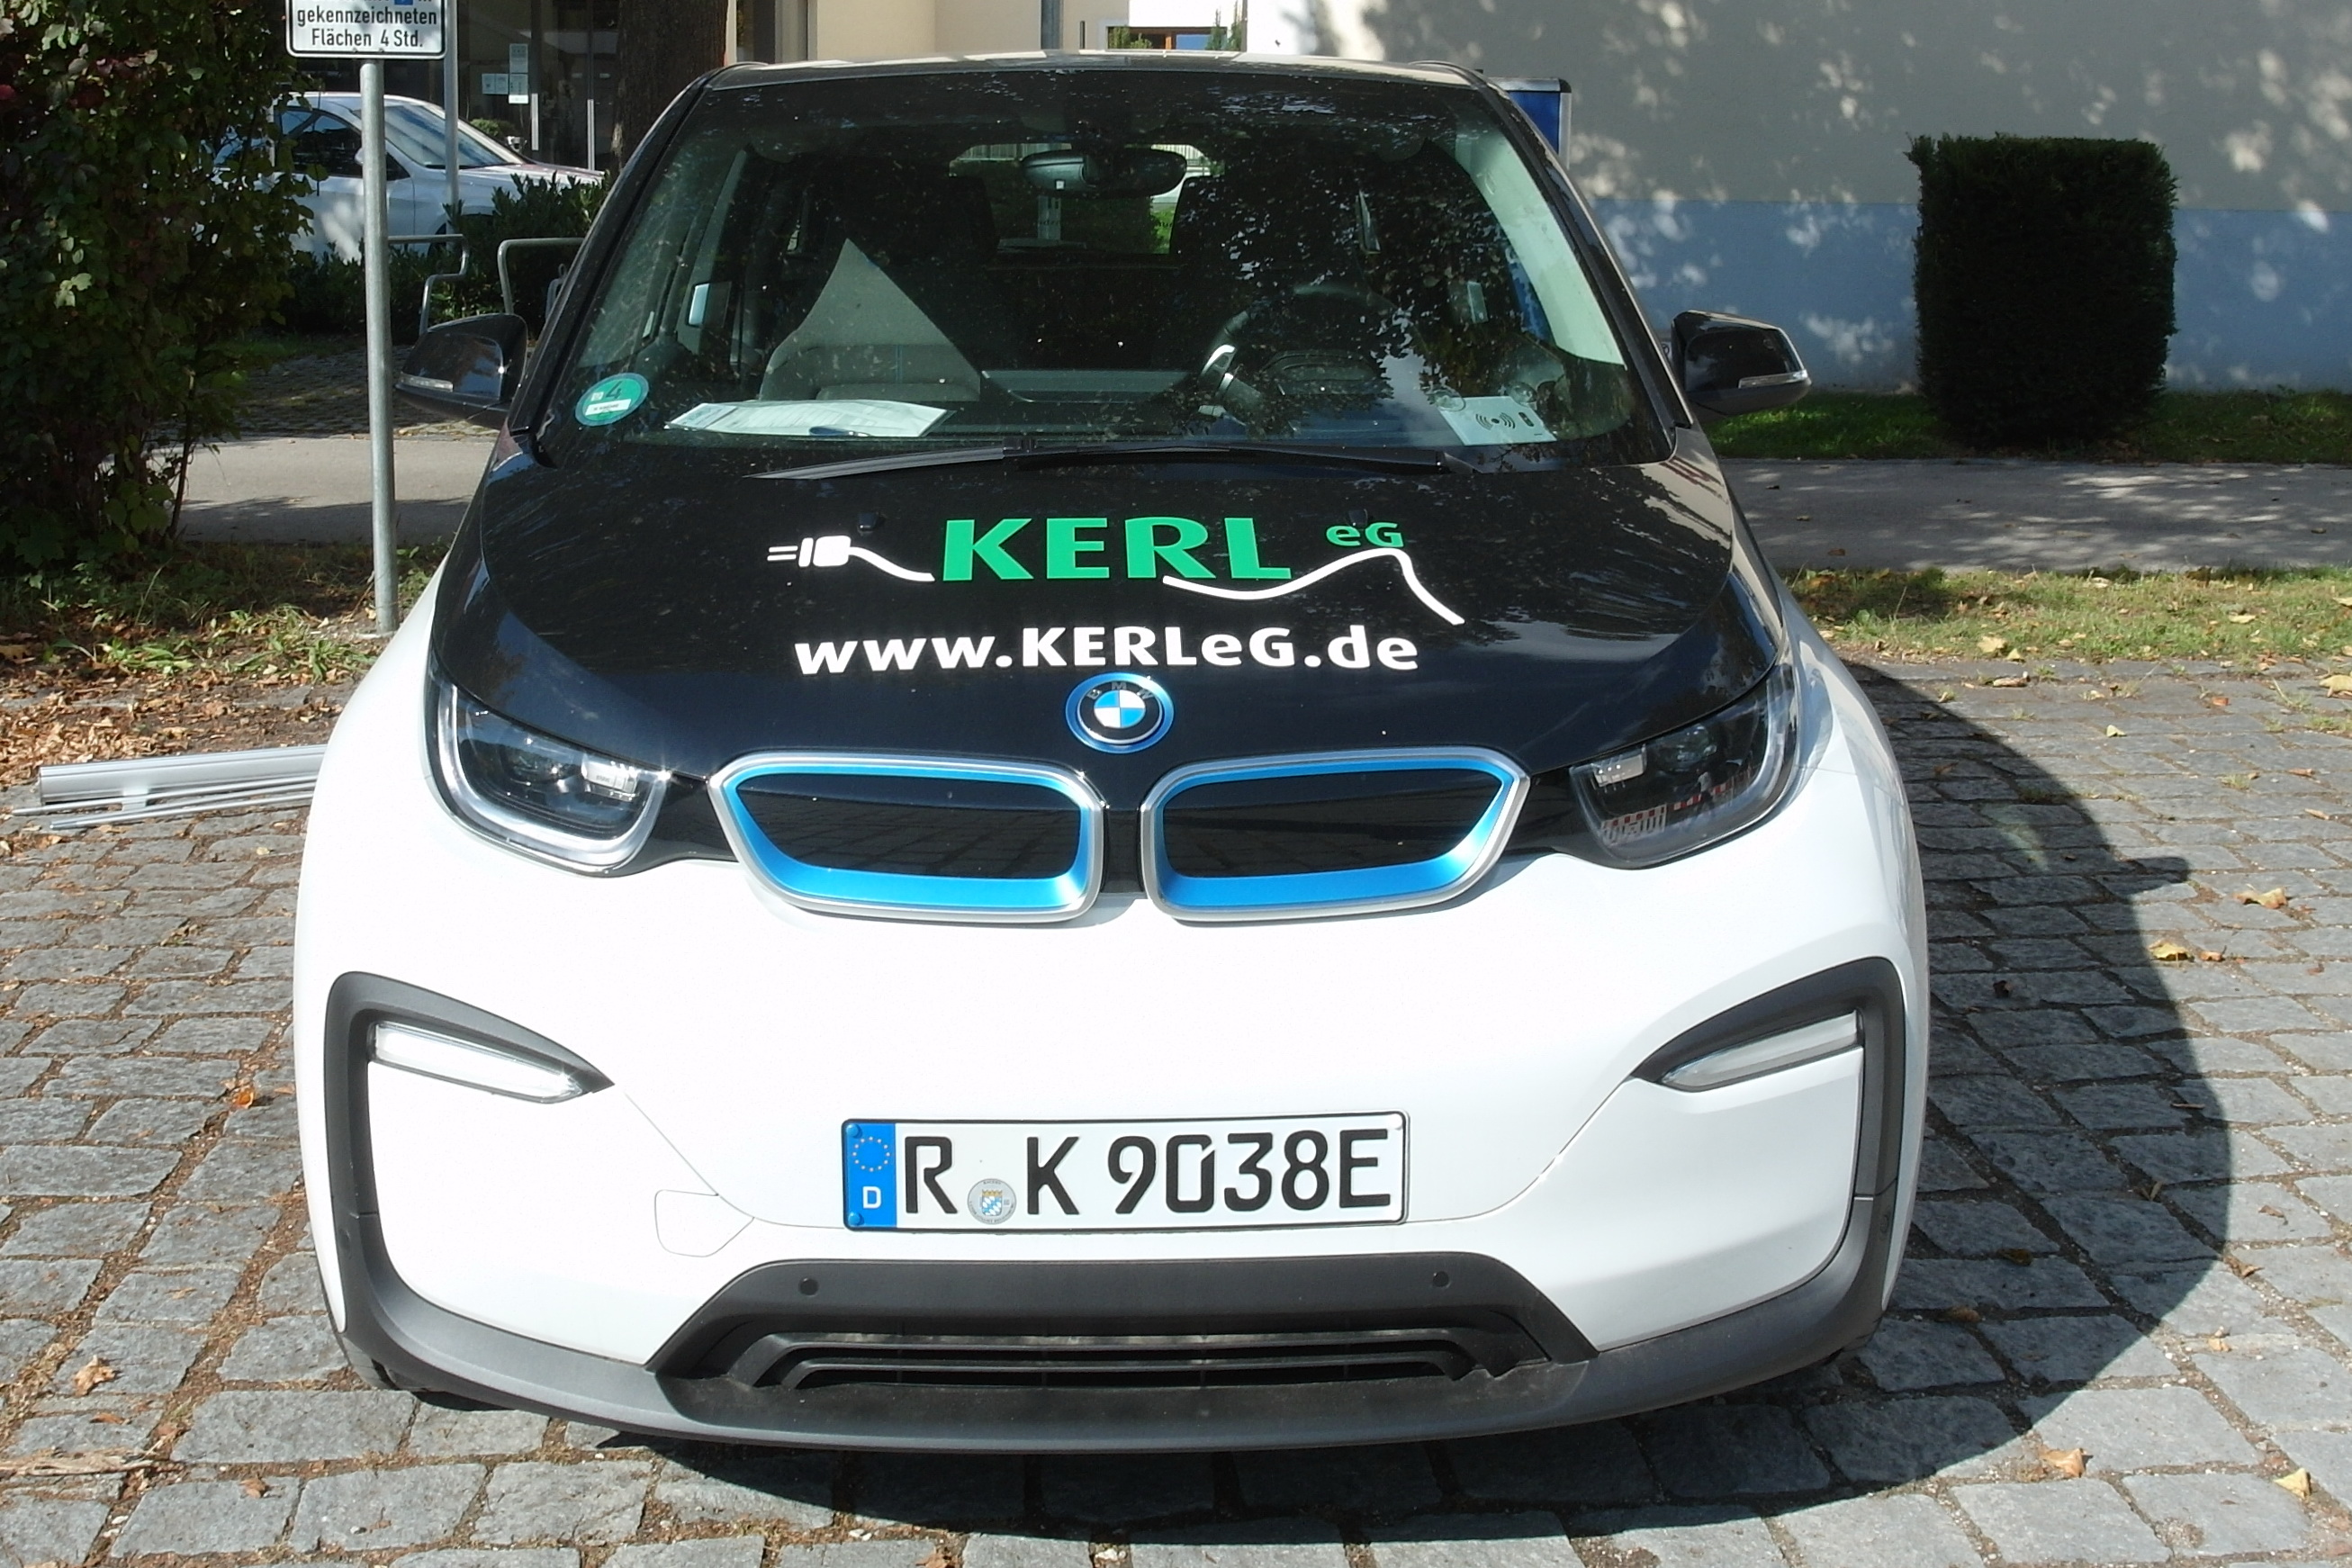 Der BMWi3 ist in Donaustauf stationiert und gehört zur E-Auto-Flotte der KERL eG.